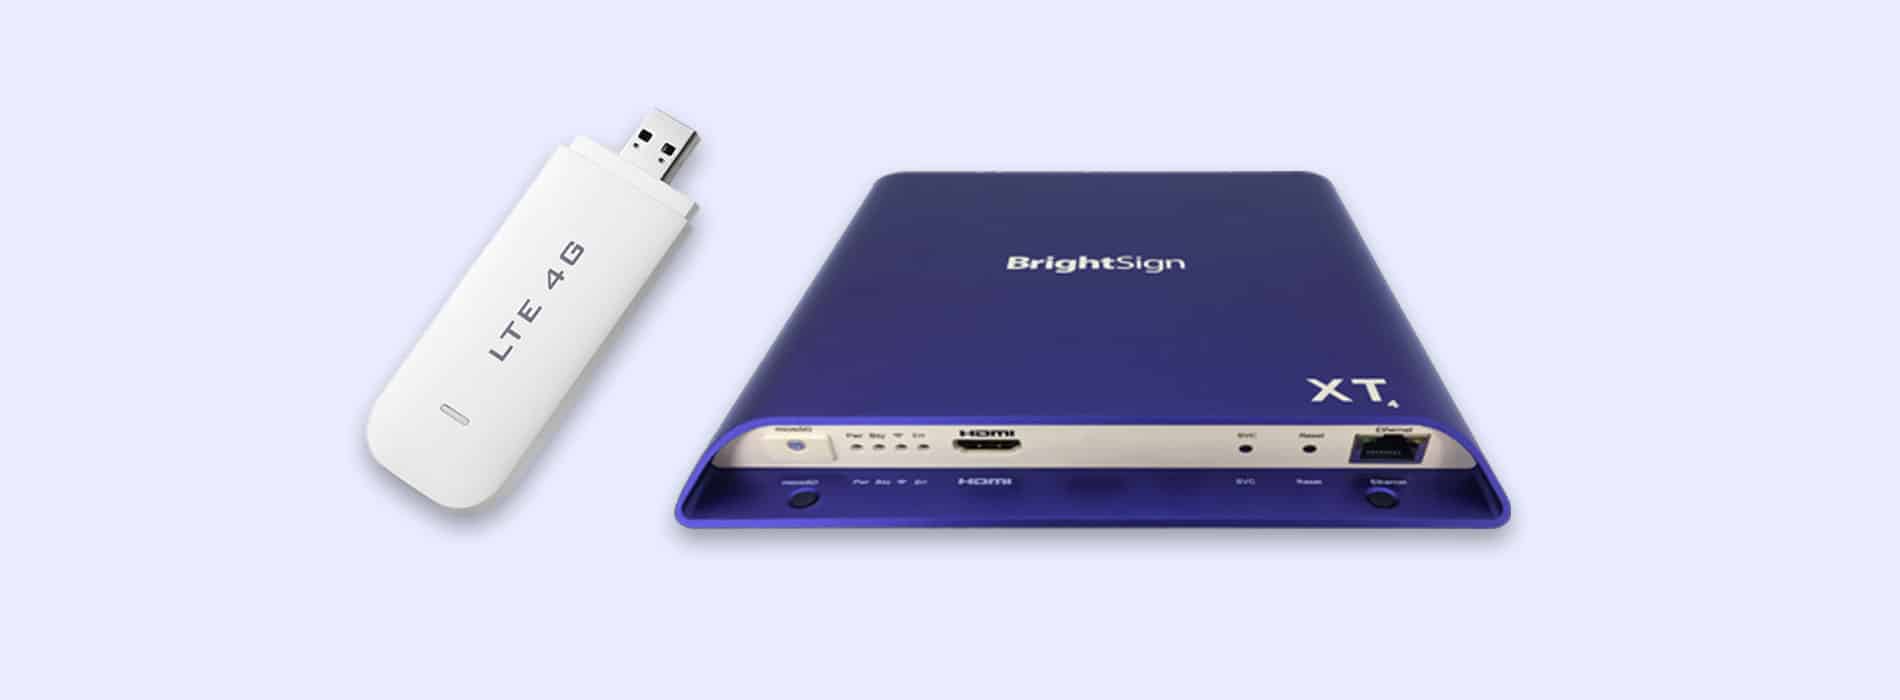 Brightsign Network Zugriff 4G